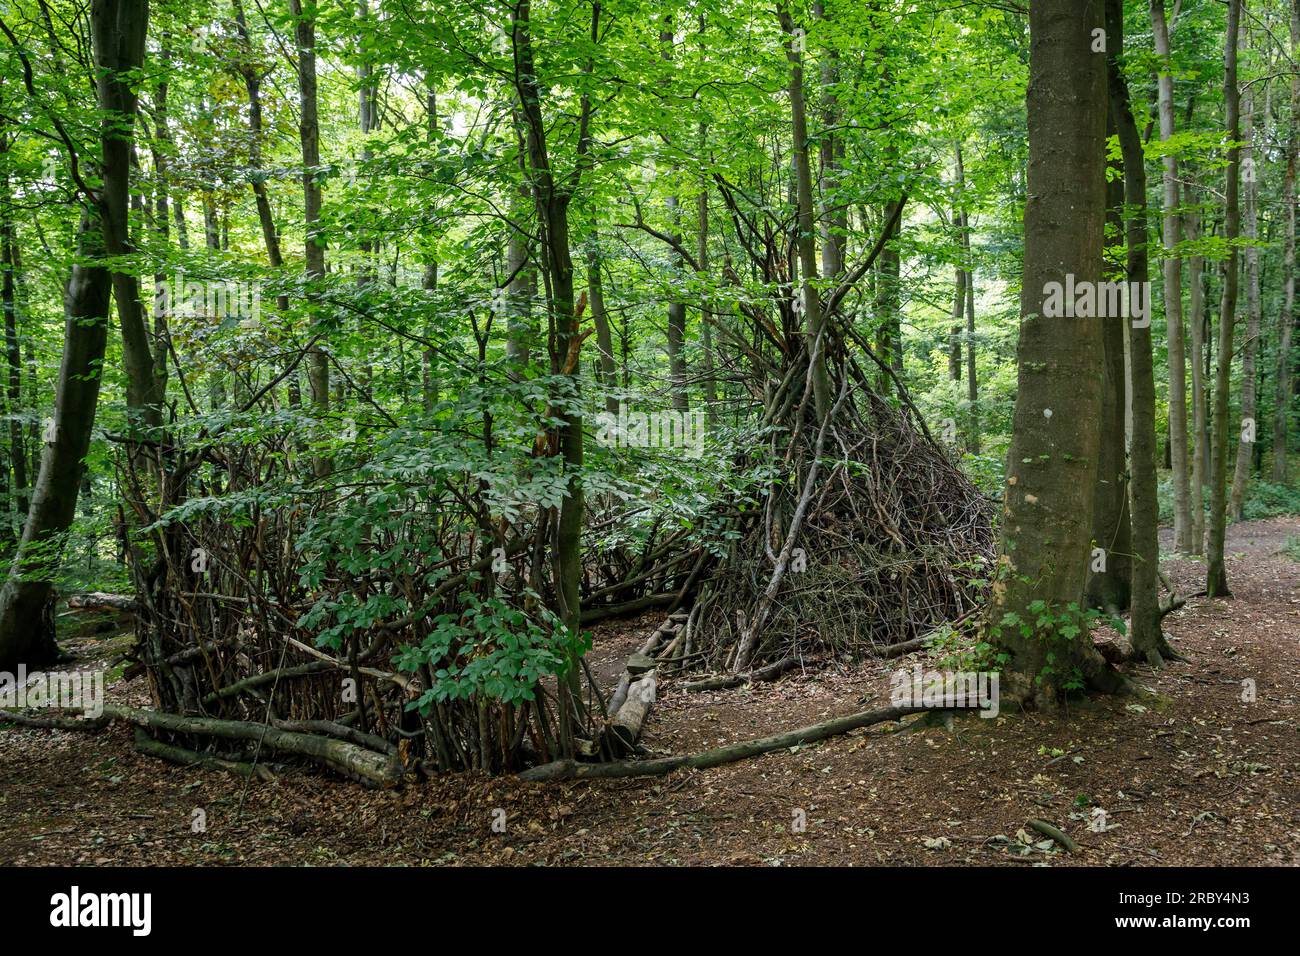 Asthütte im Wald im Ardey-Gebirge bei Herdecke, Nordrhein-Westfalen, Deutschland. Asthuette im Wald im Ardeygebirge bei Herdecke, Nordrhei Stockfoto